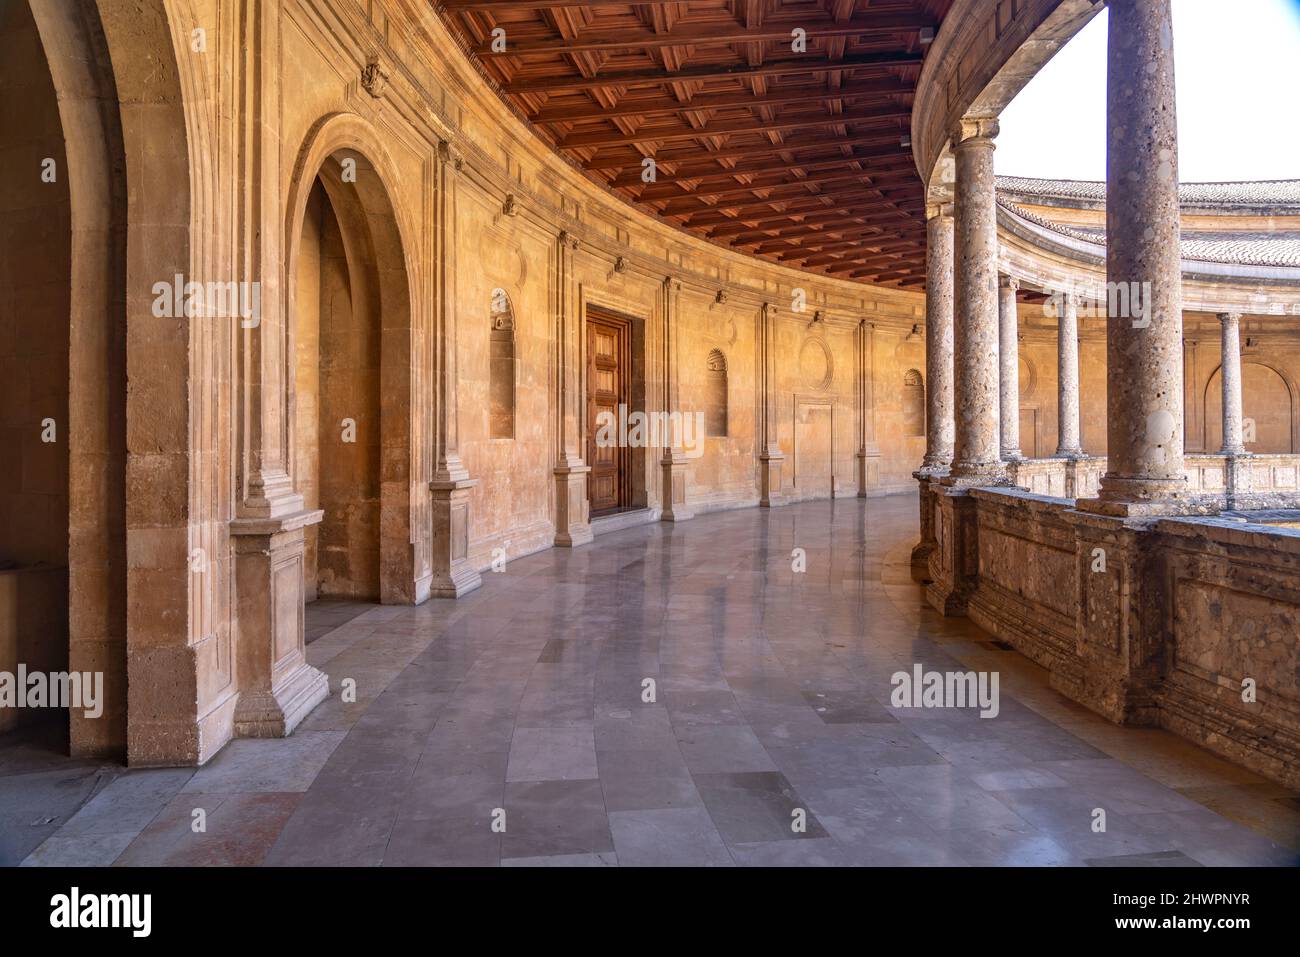 Palast Karls V., Welterbe Alhambra a Granada, Andalusia, spagnolo | Palazzo di Carlo V, patrimonio mondiale dell'Alhambra a Granada, Andalusia, Spagna Foto Stock